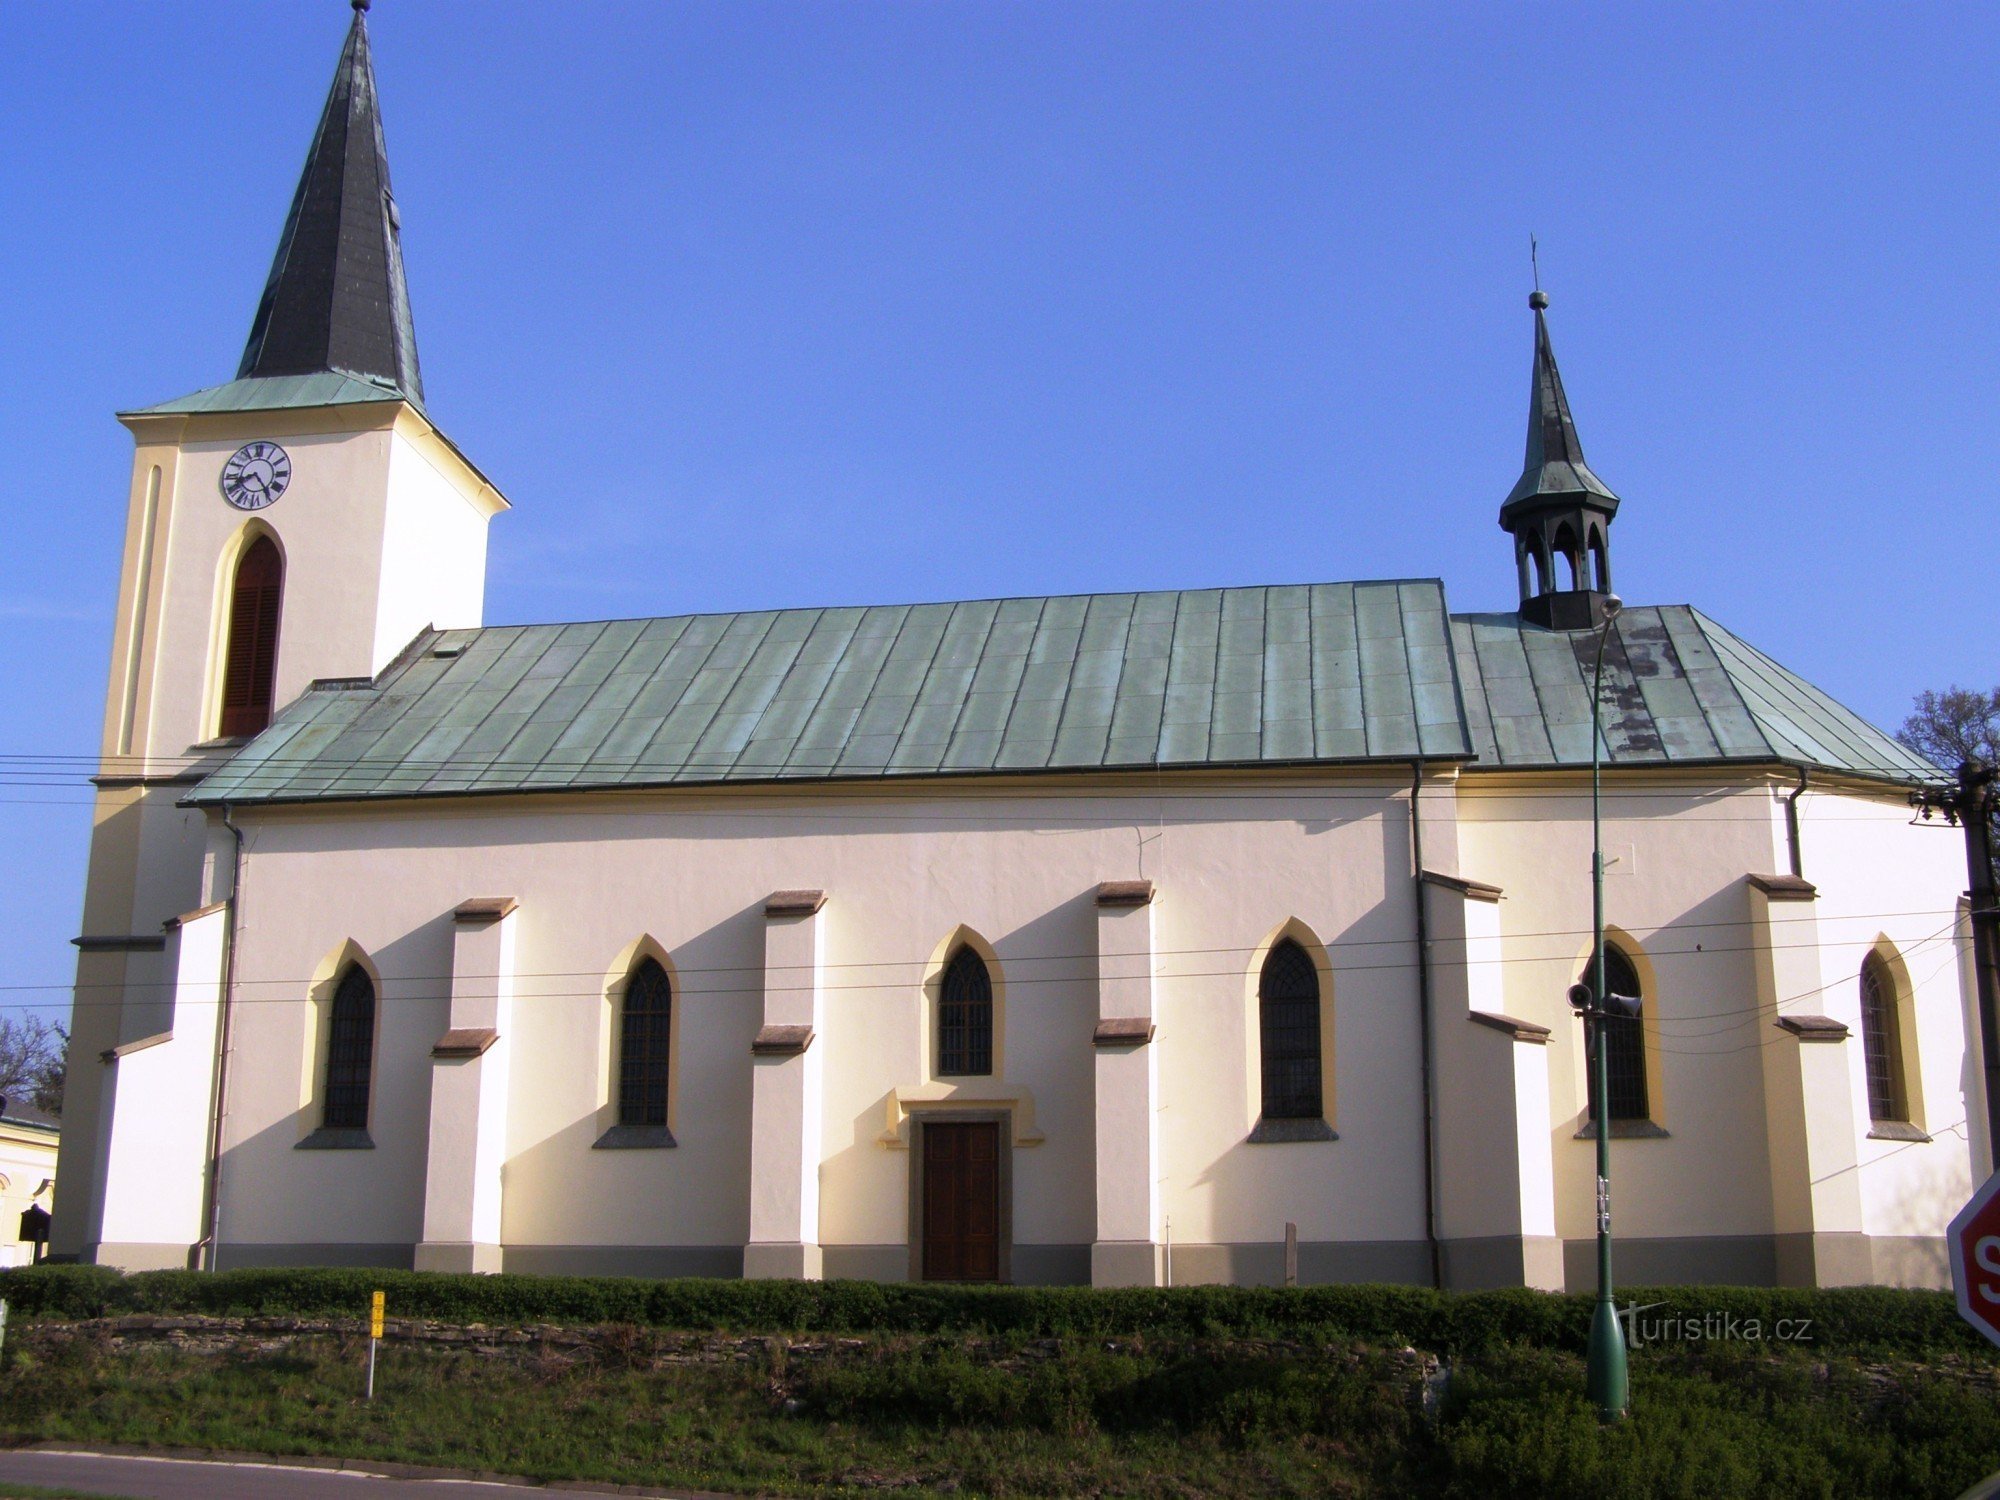 Horní Jelení - Kerk van de Heilige Drie-eenheid